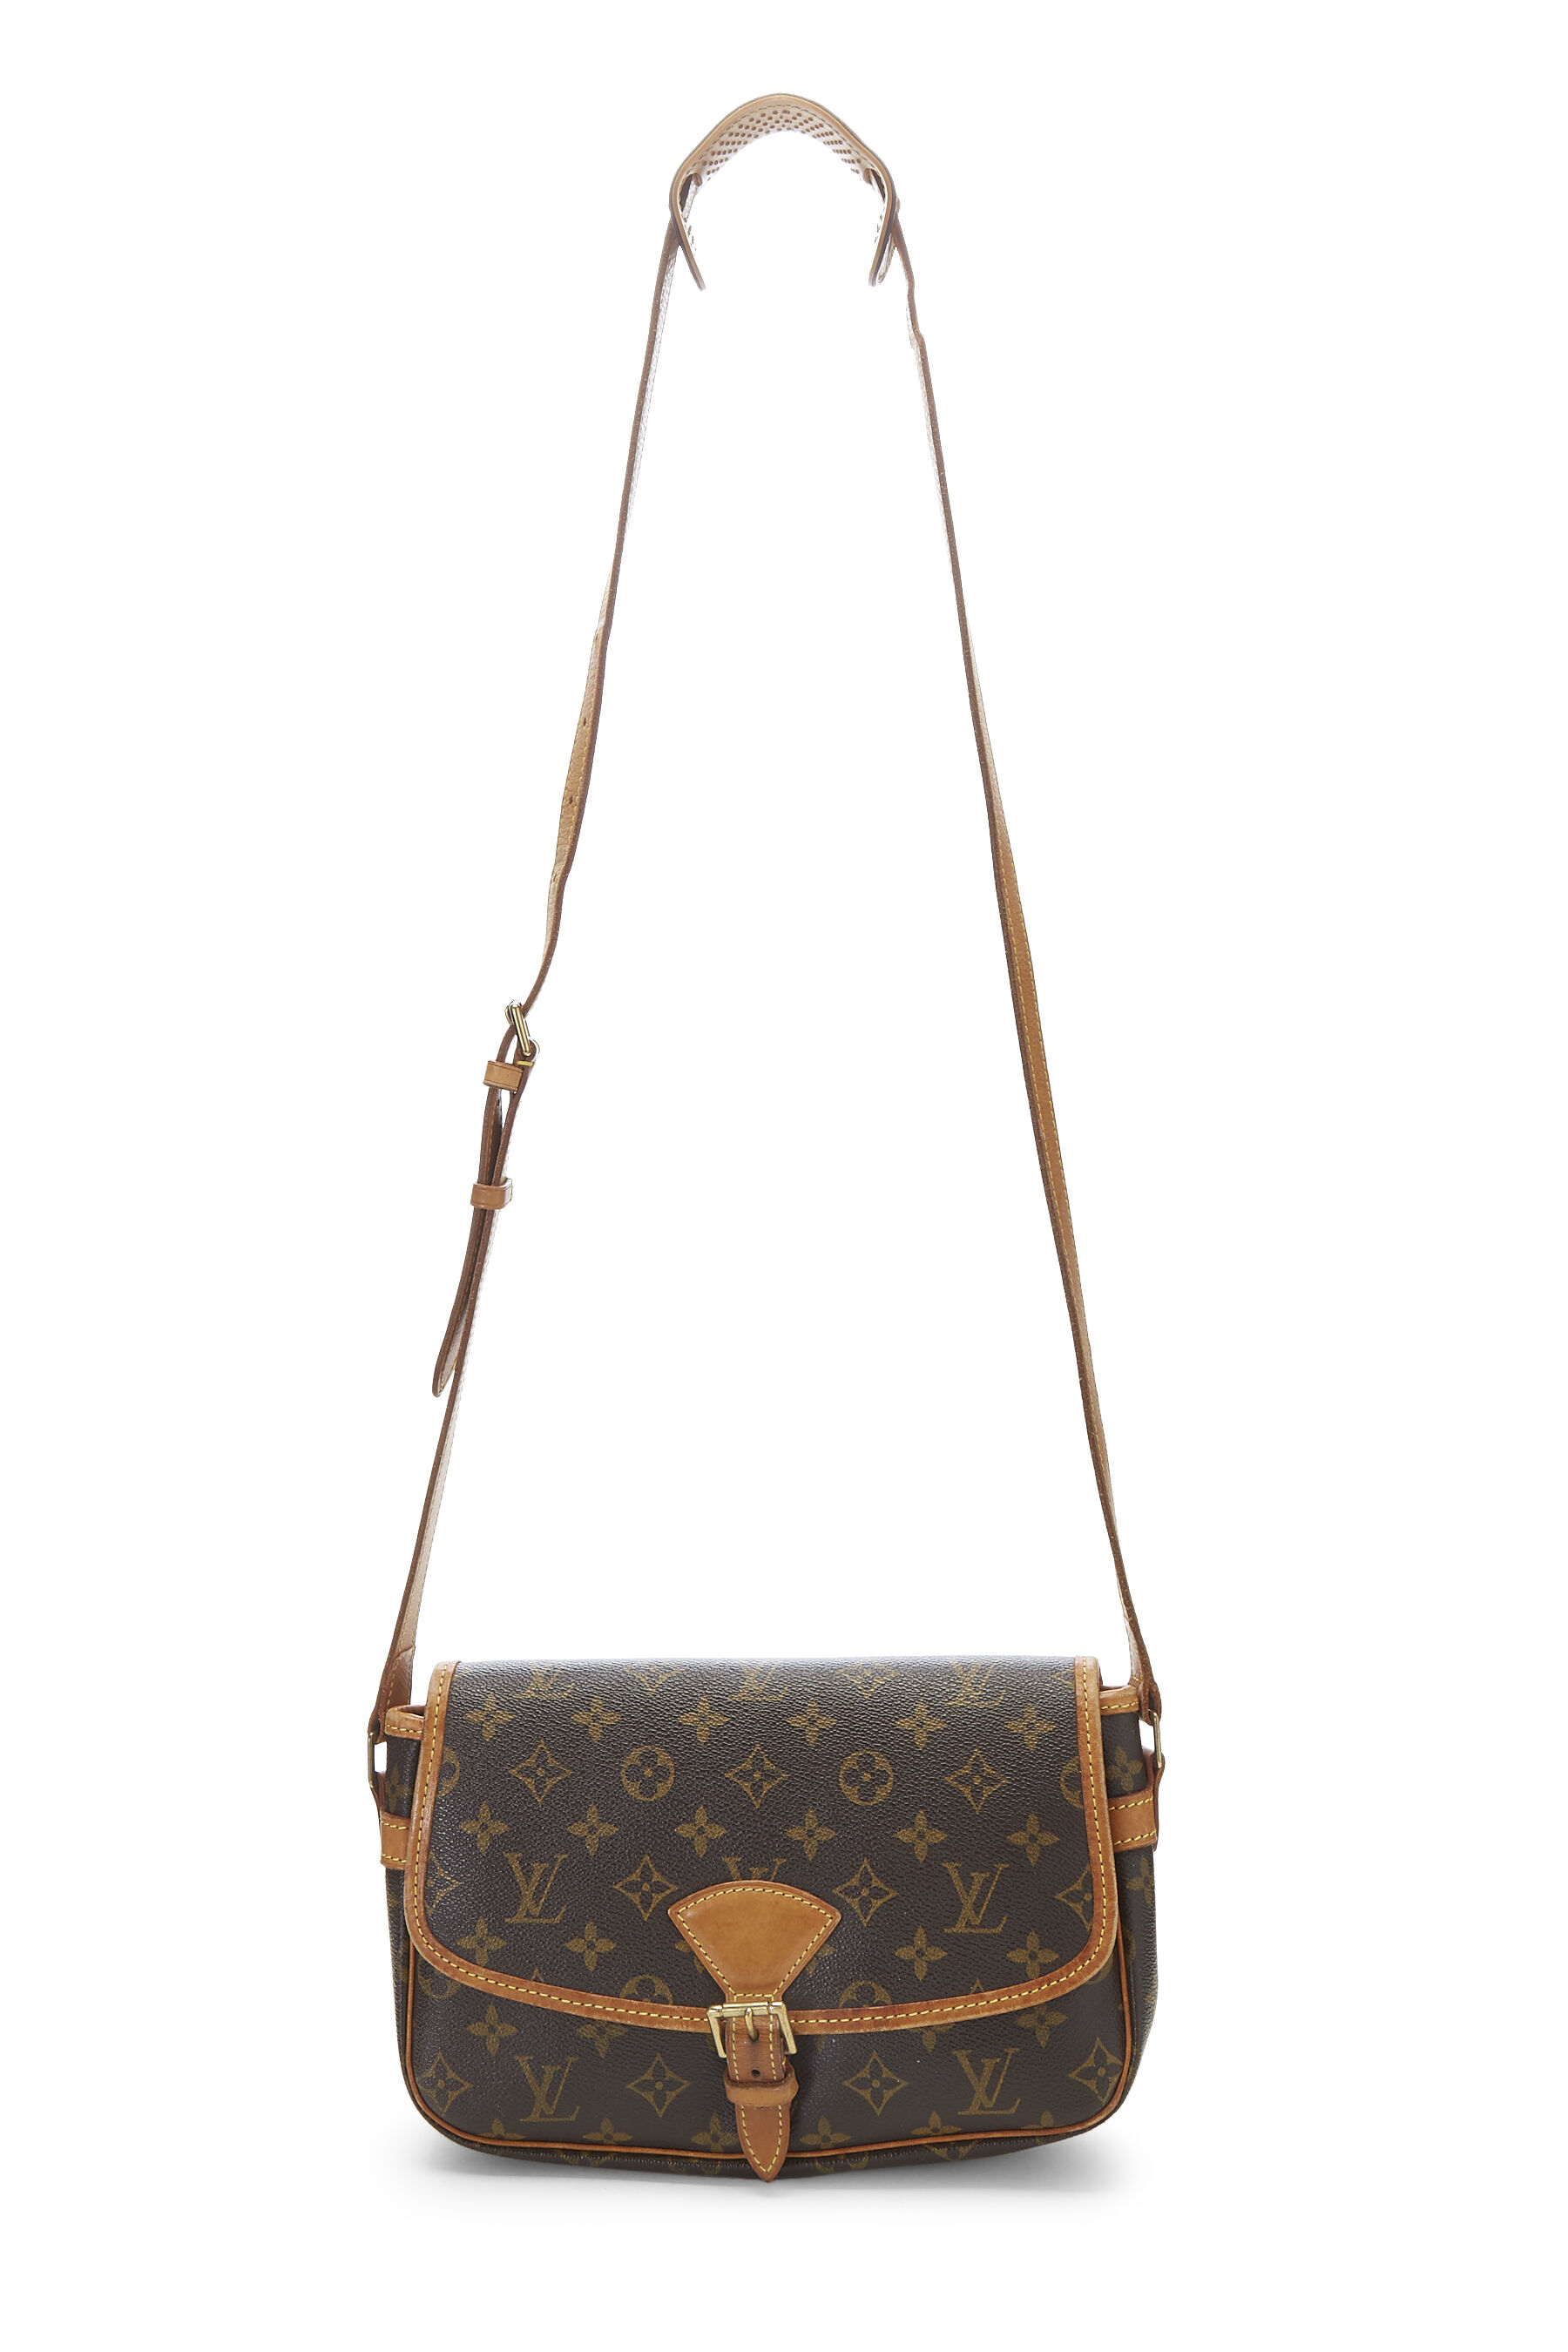 Louis Vuitton Monogram Sologne Bag